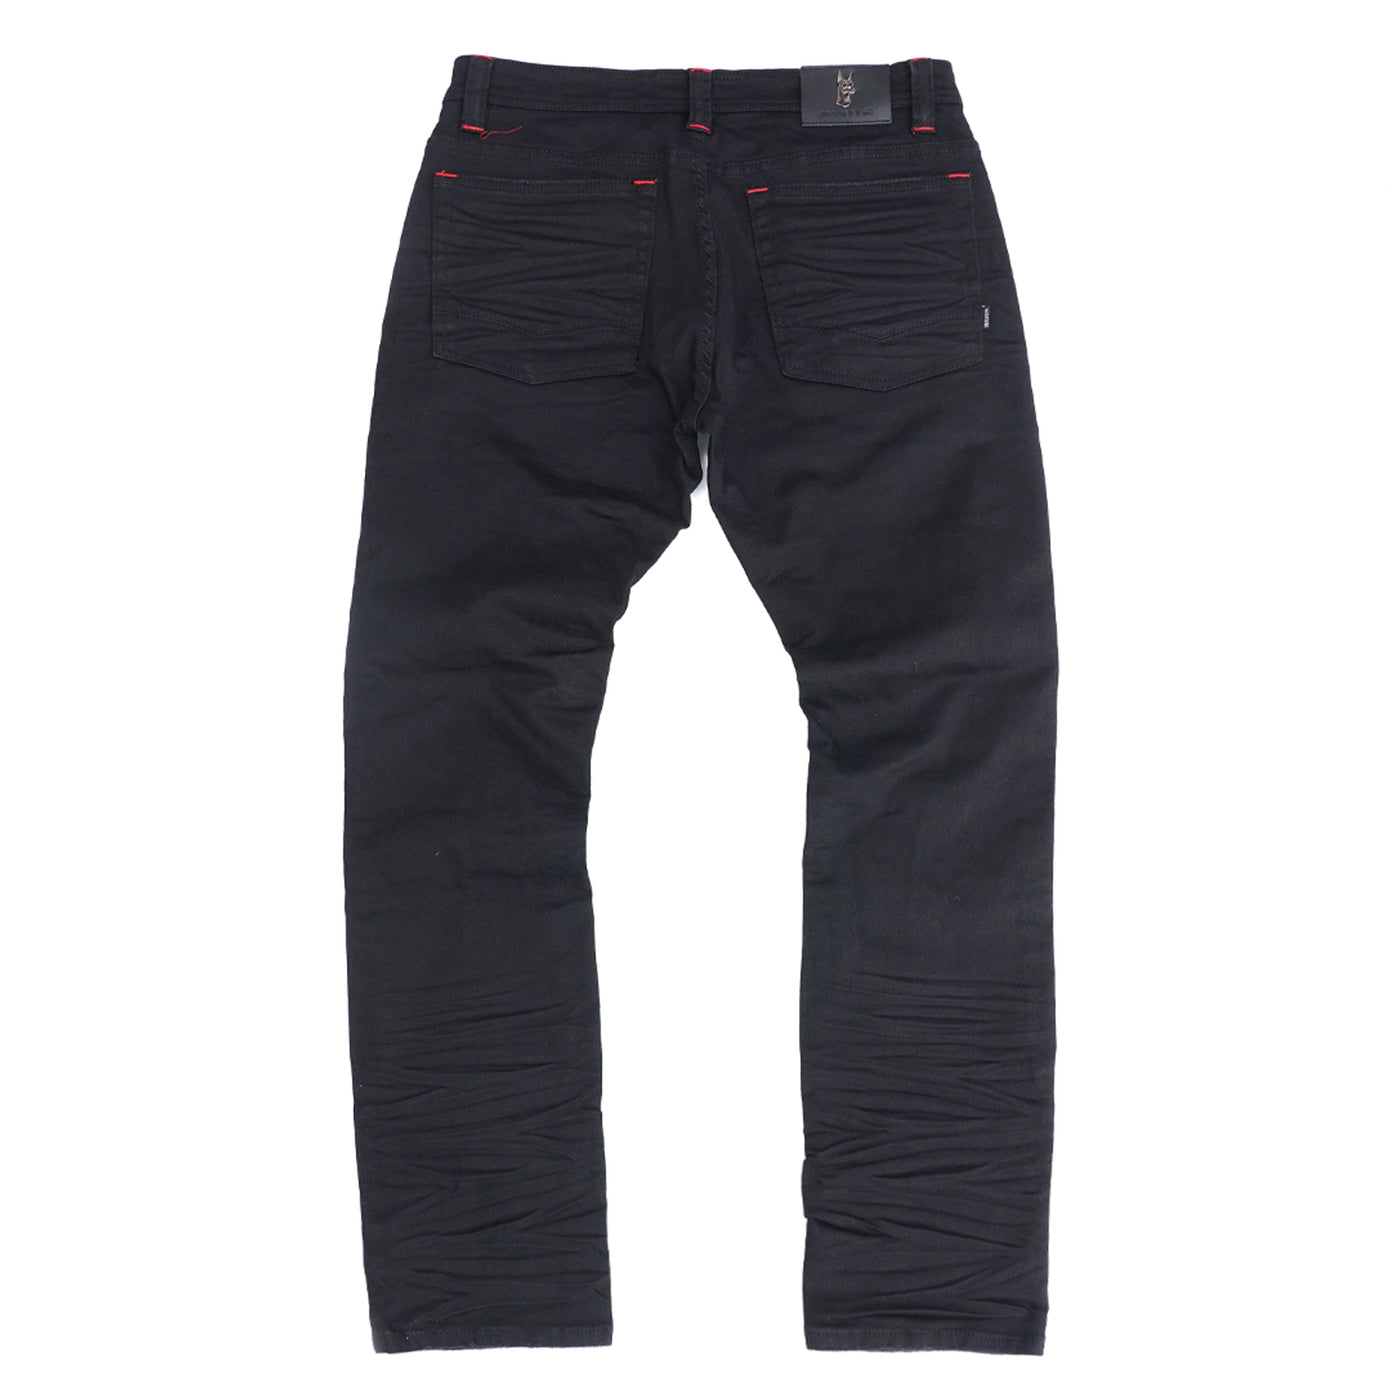 M1928 All Over Shredded Jeans - Black/Black